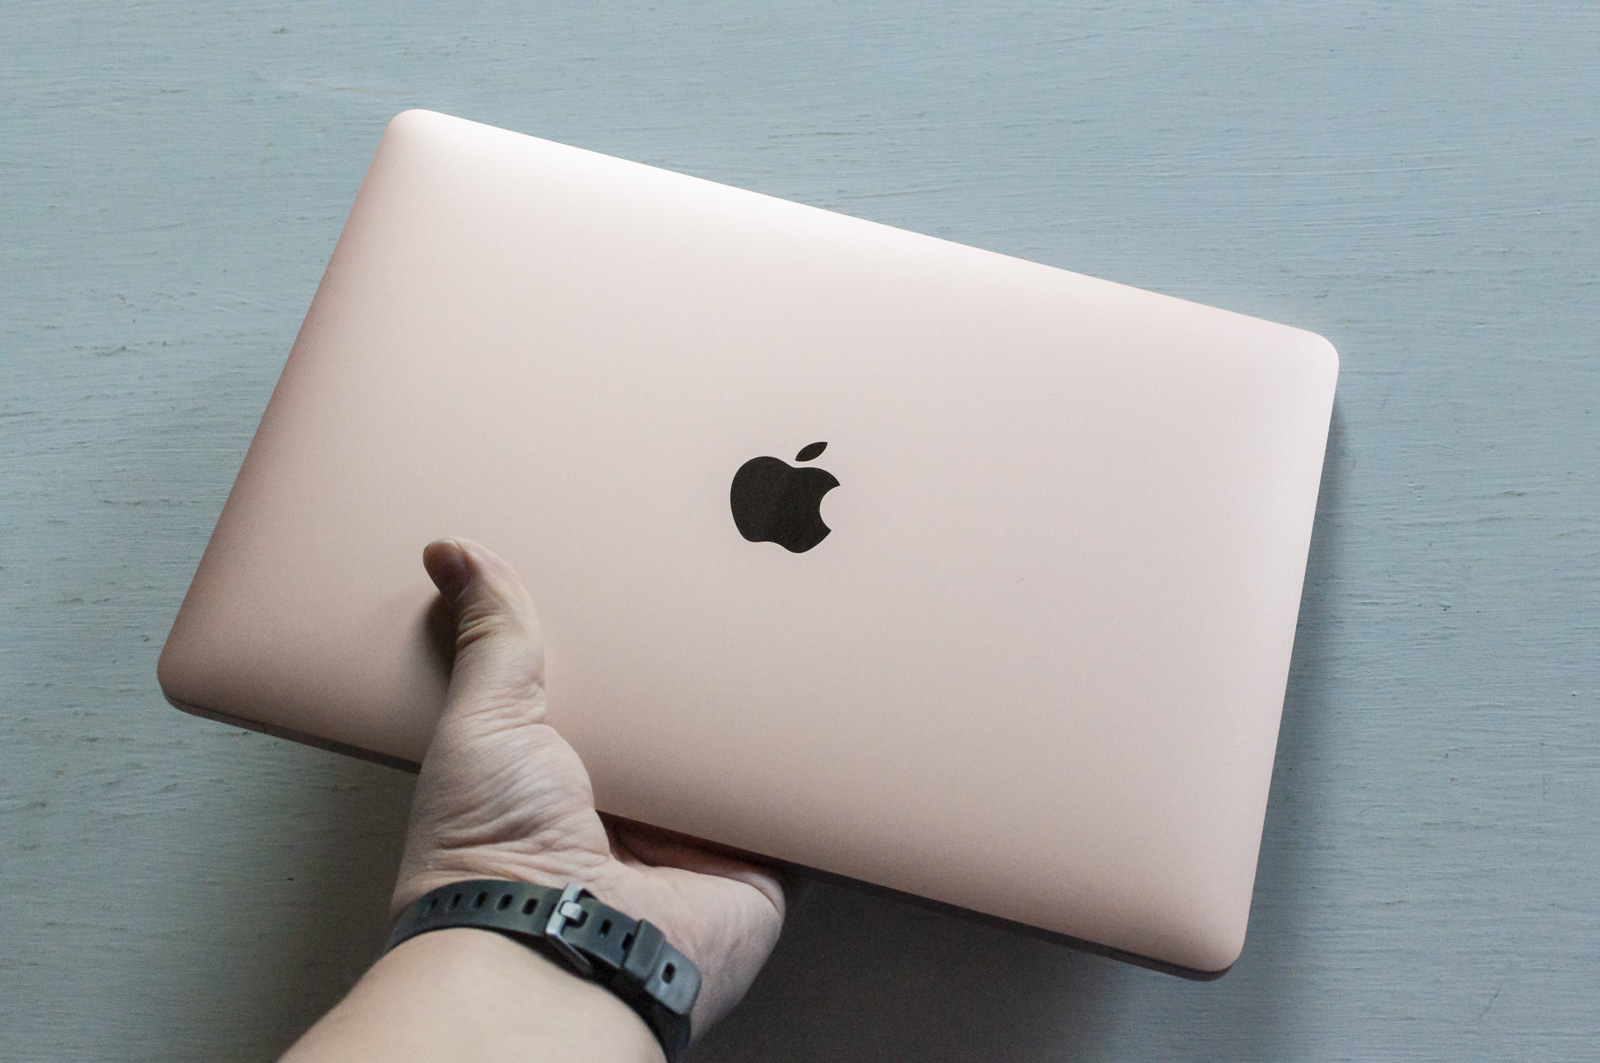 Apple lavora a MacBook Air più sottile e leggero atteso nel 2021 o 2022 